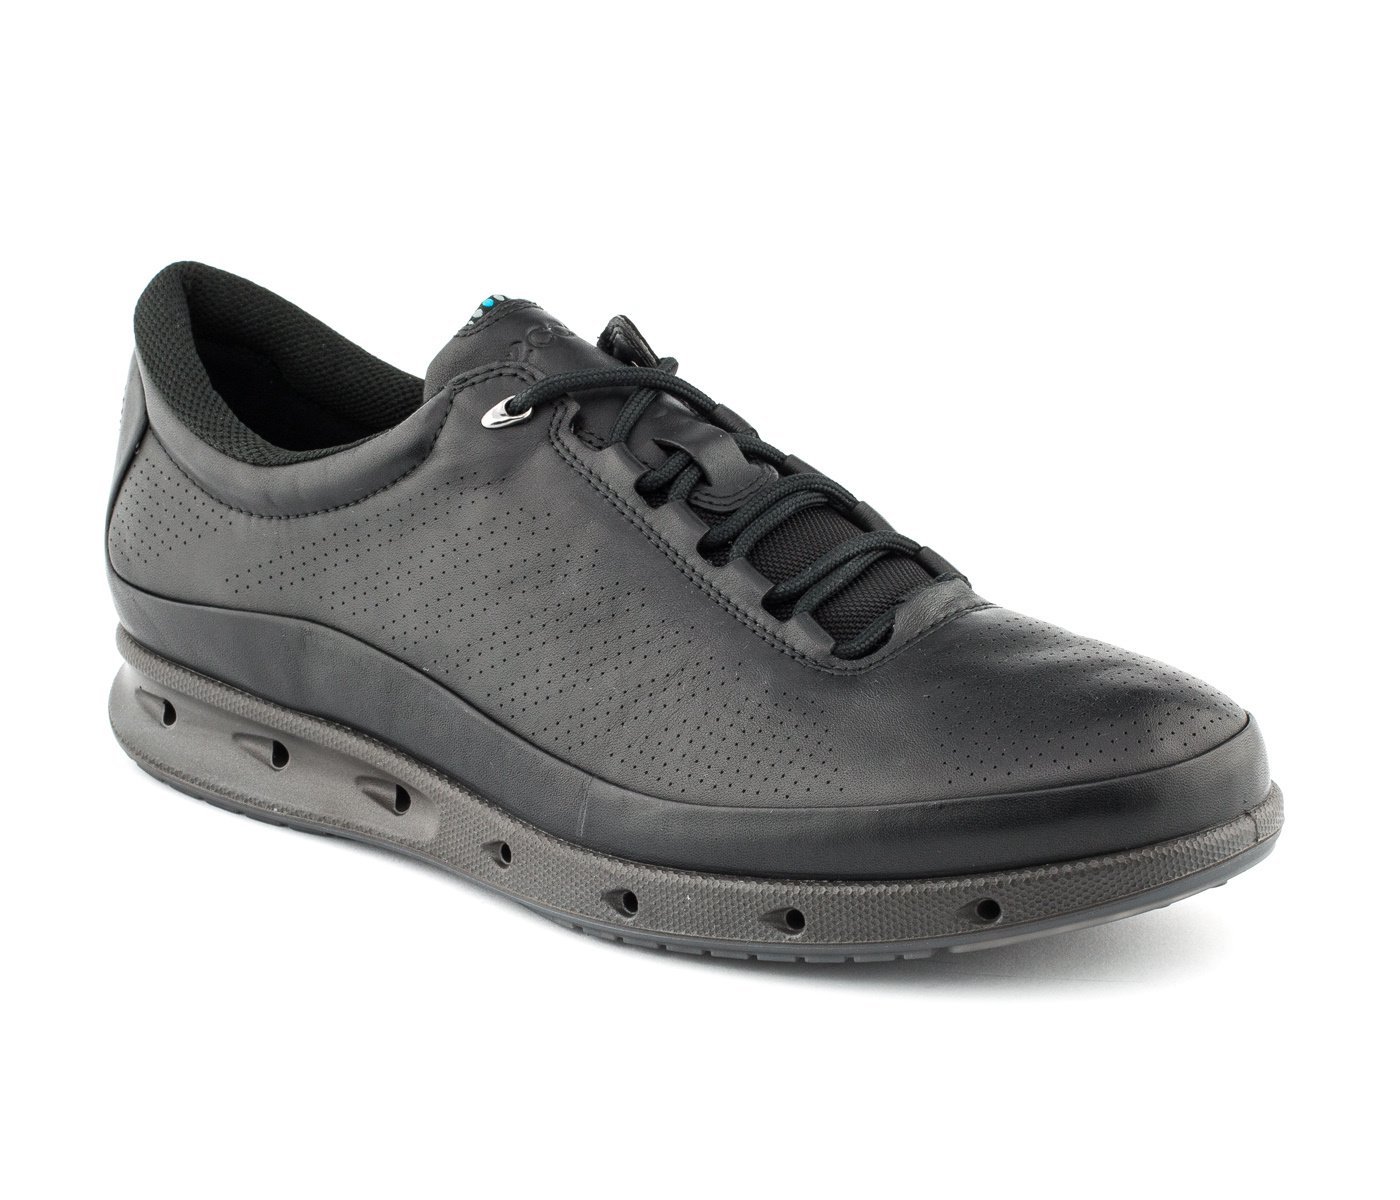 ECCO Cool 831304 Premium Leather Upper Orthotic Comfort Gortex Sneaker ...